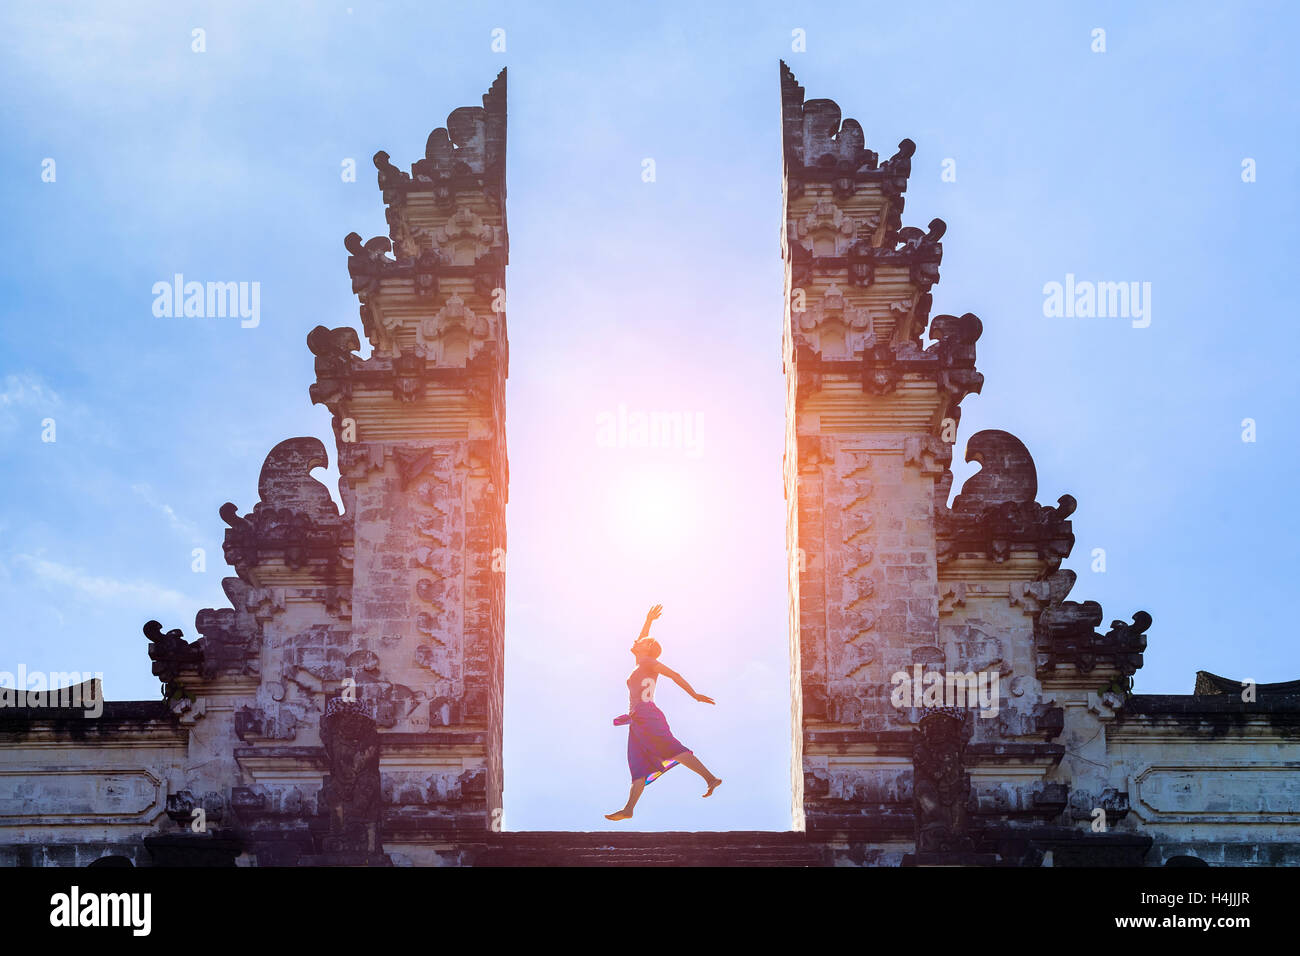 Frau reisenden Springen mit Energie und Vitalität im Tor von einem Tempel, Bali, Indonesien Stockfoto